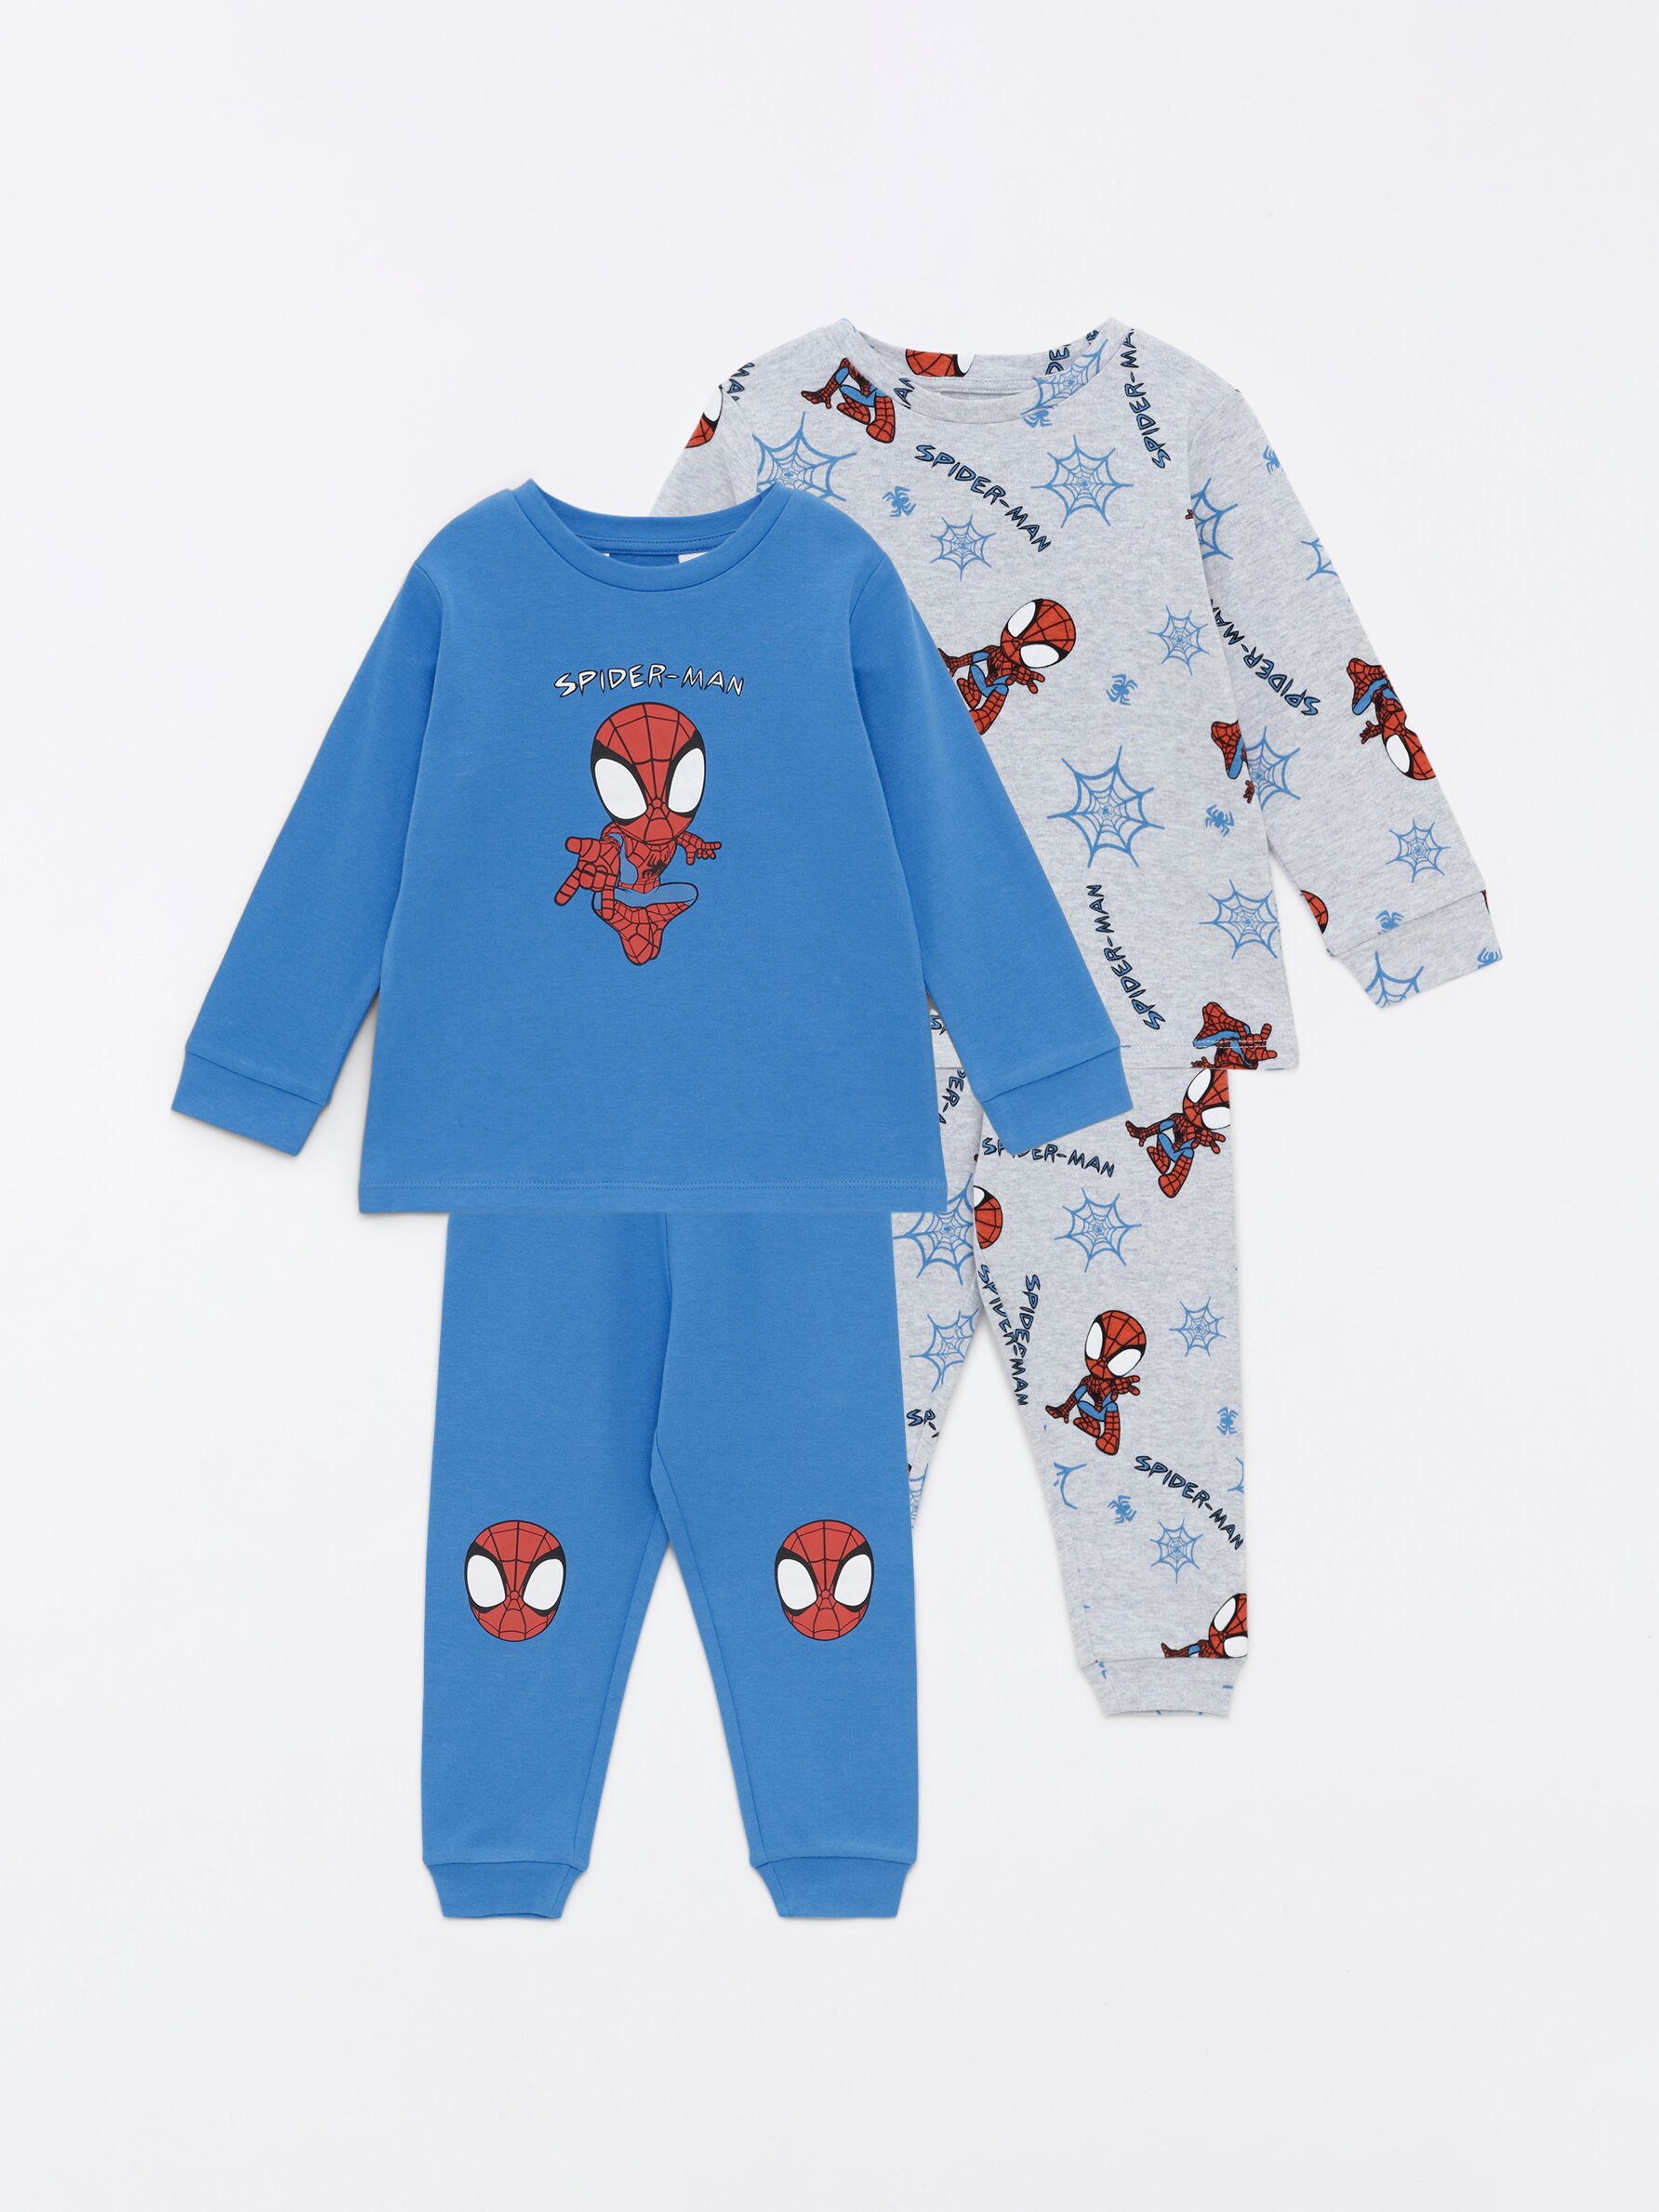 Pijama Spiderman Camiseta + Pantalón, PIJAMAS, PIJAMAS, ROPA INTERIOR  NIÑOS, INFANTIL